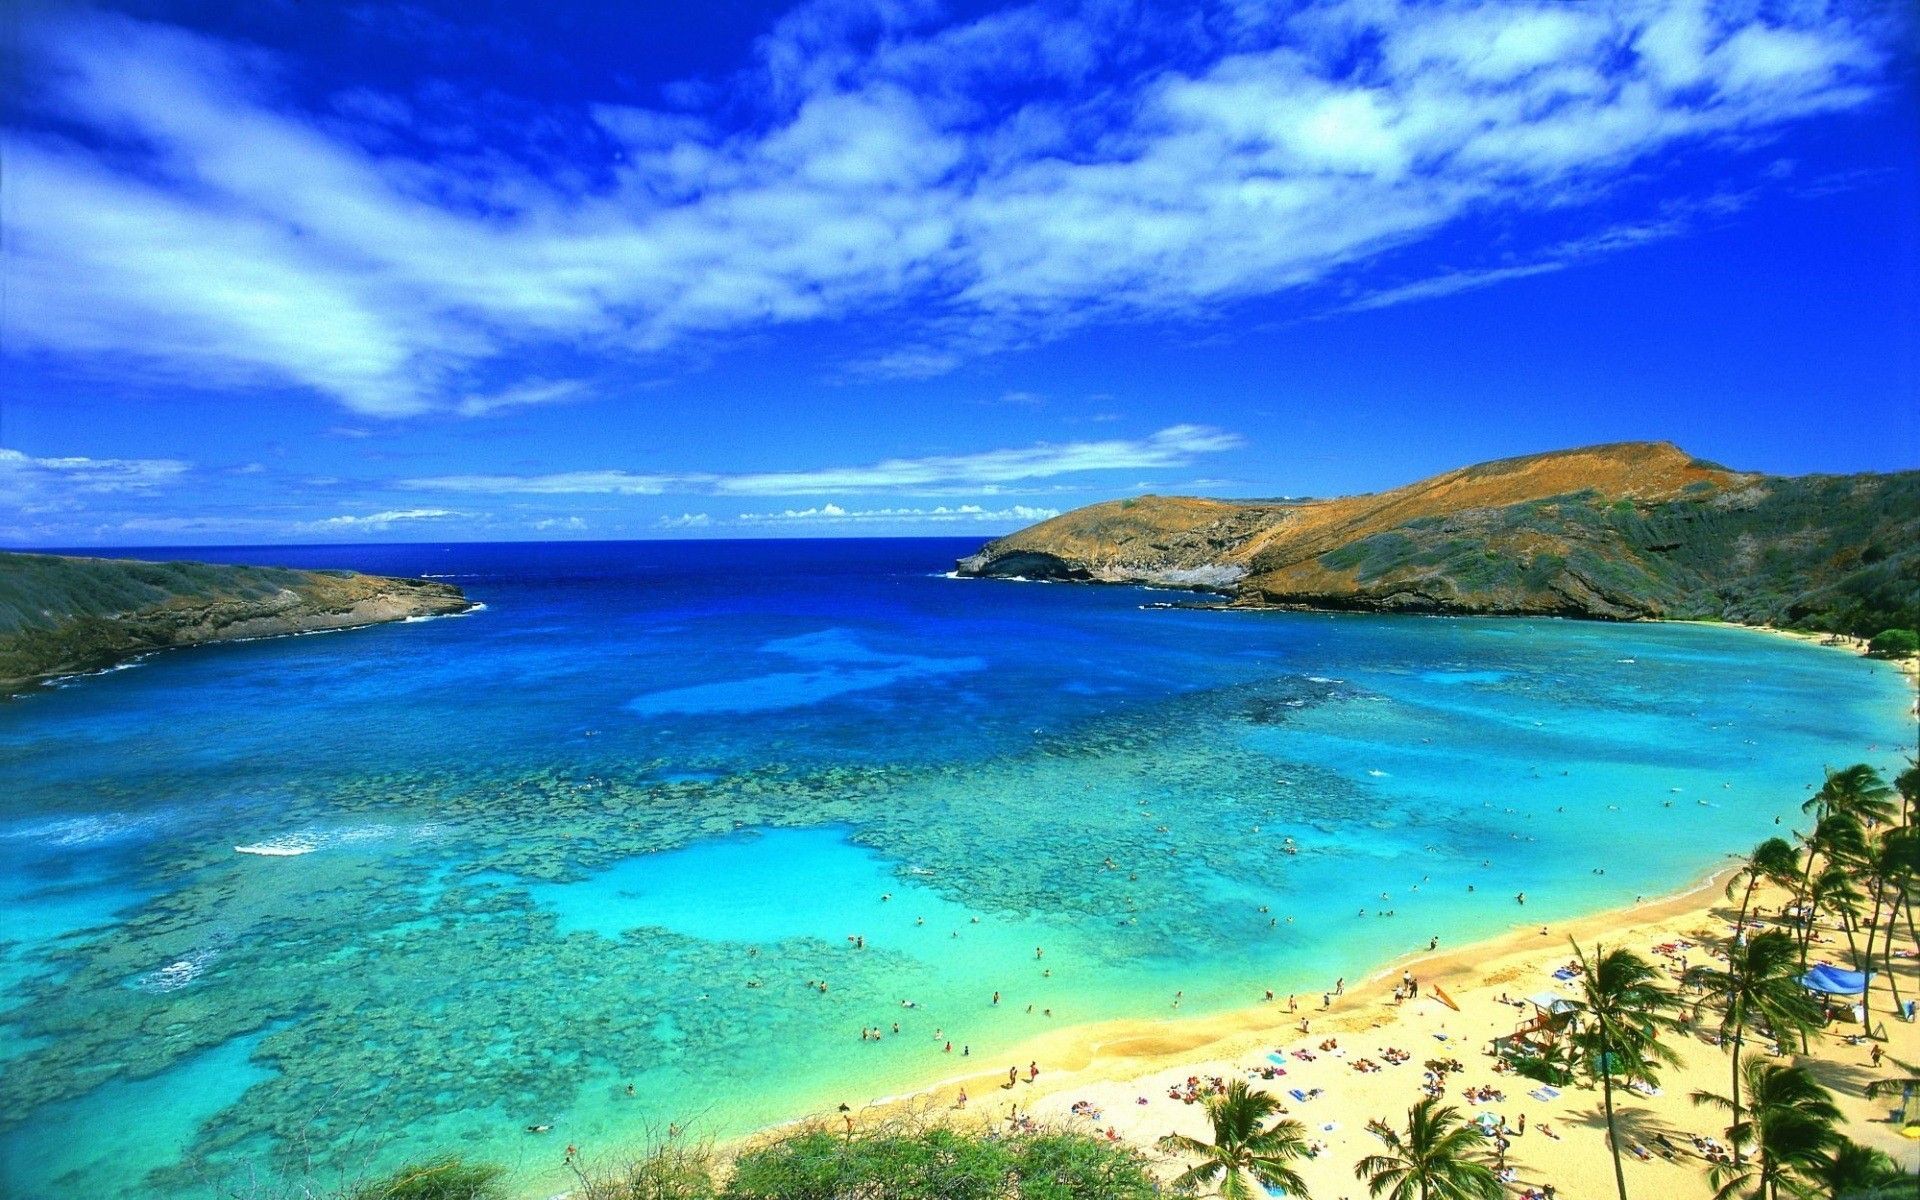 عکس شگفت انگیز ترین جاذبه های توریستی در جزیره ی هاوایی